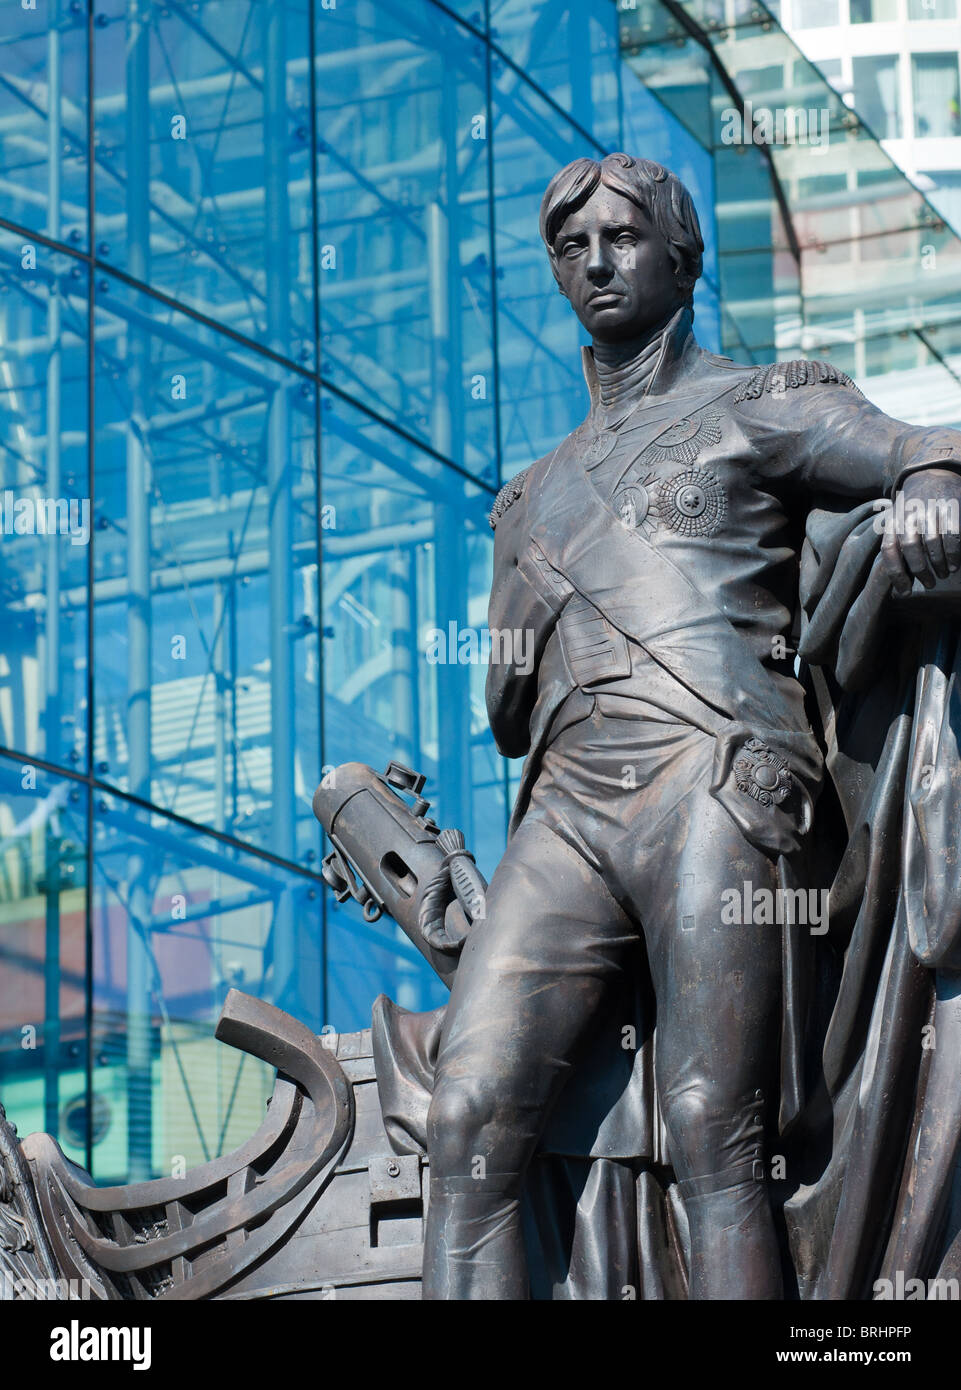 Statue en bronze de l'Amiral Nelson dans l'arène, Birmingham, Grande-Bretagne, 2010 Banque D'Images